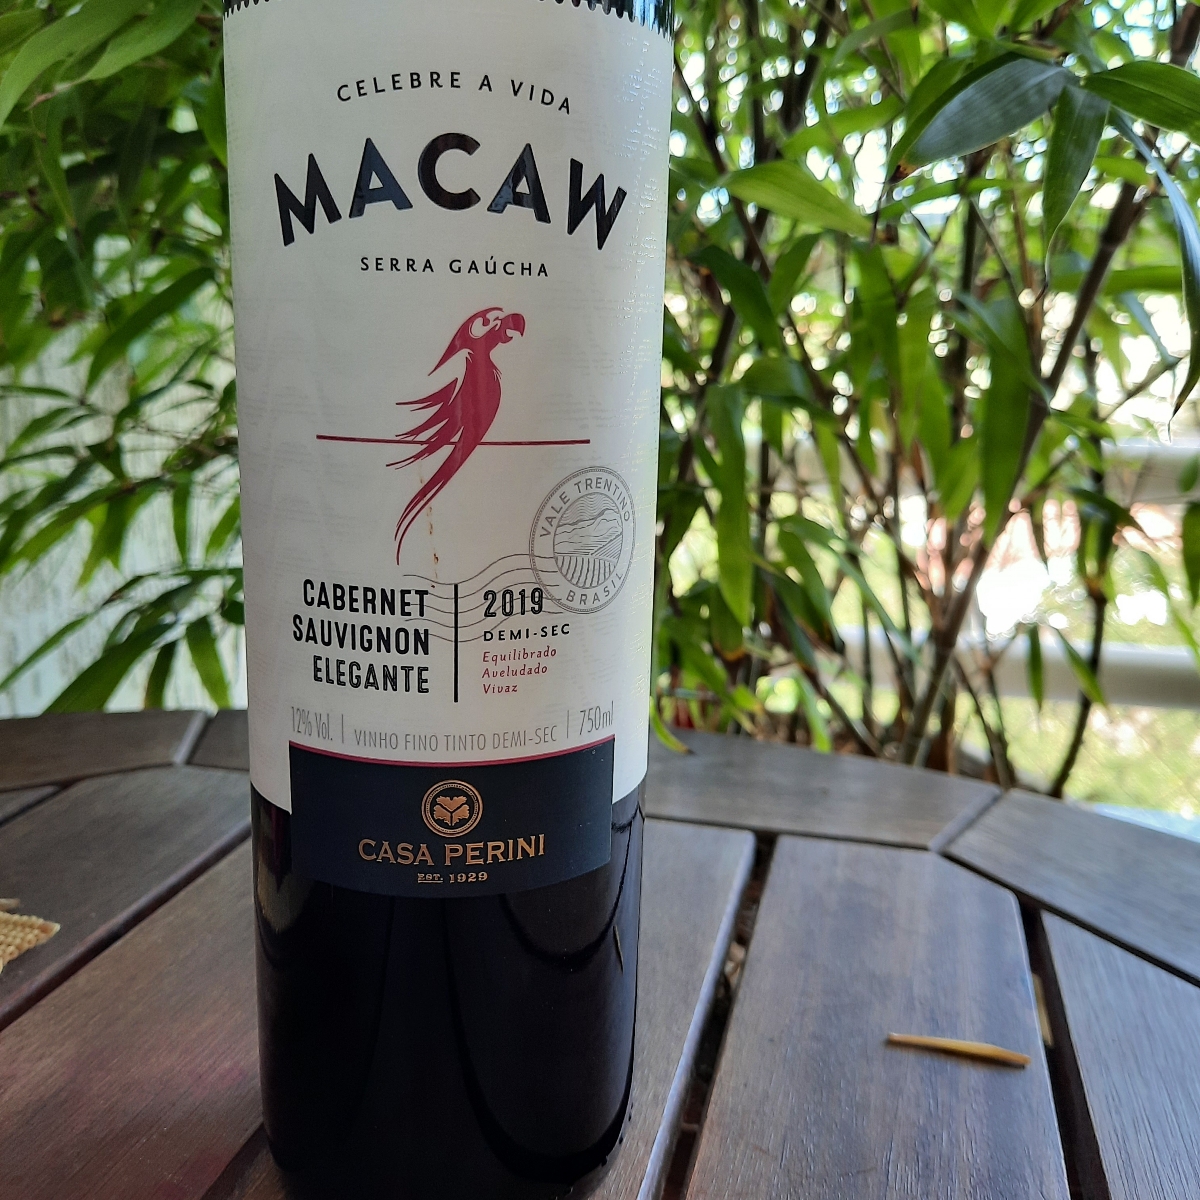 Avaliações de Macaw Vinho Tinto Cabernet Sauvignon da Casa Perini